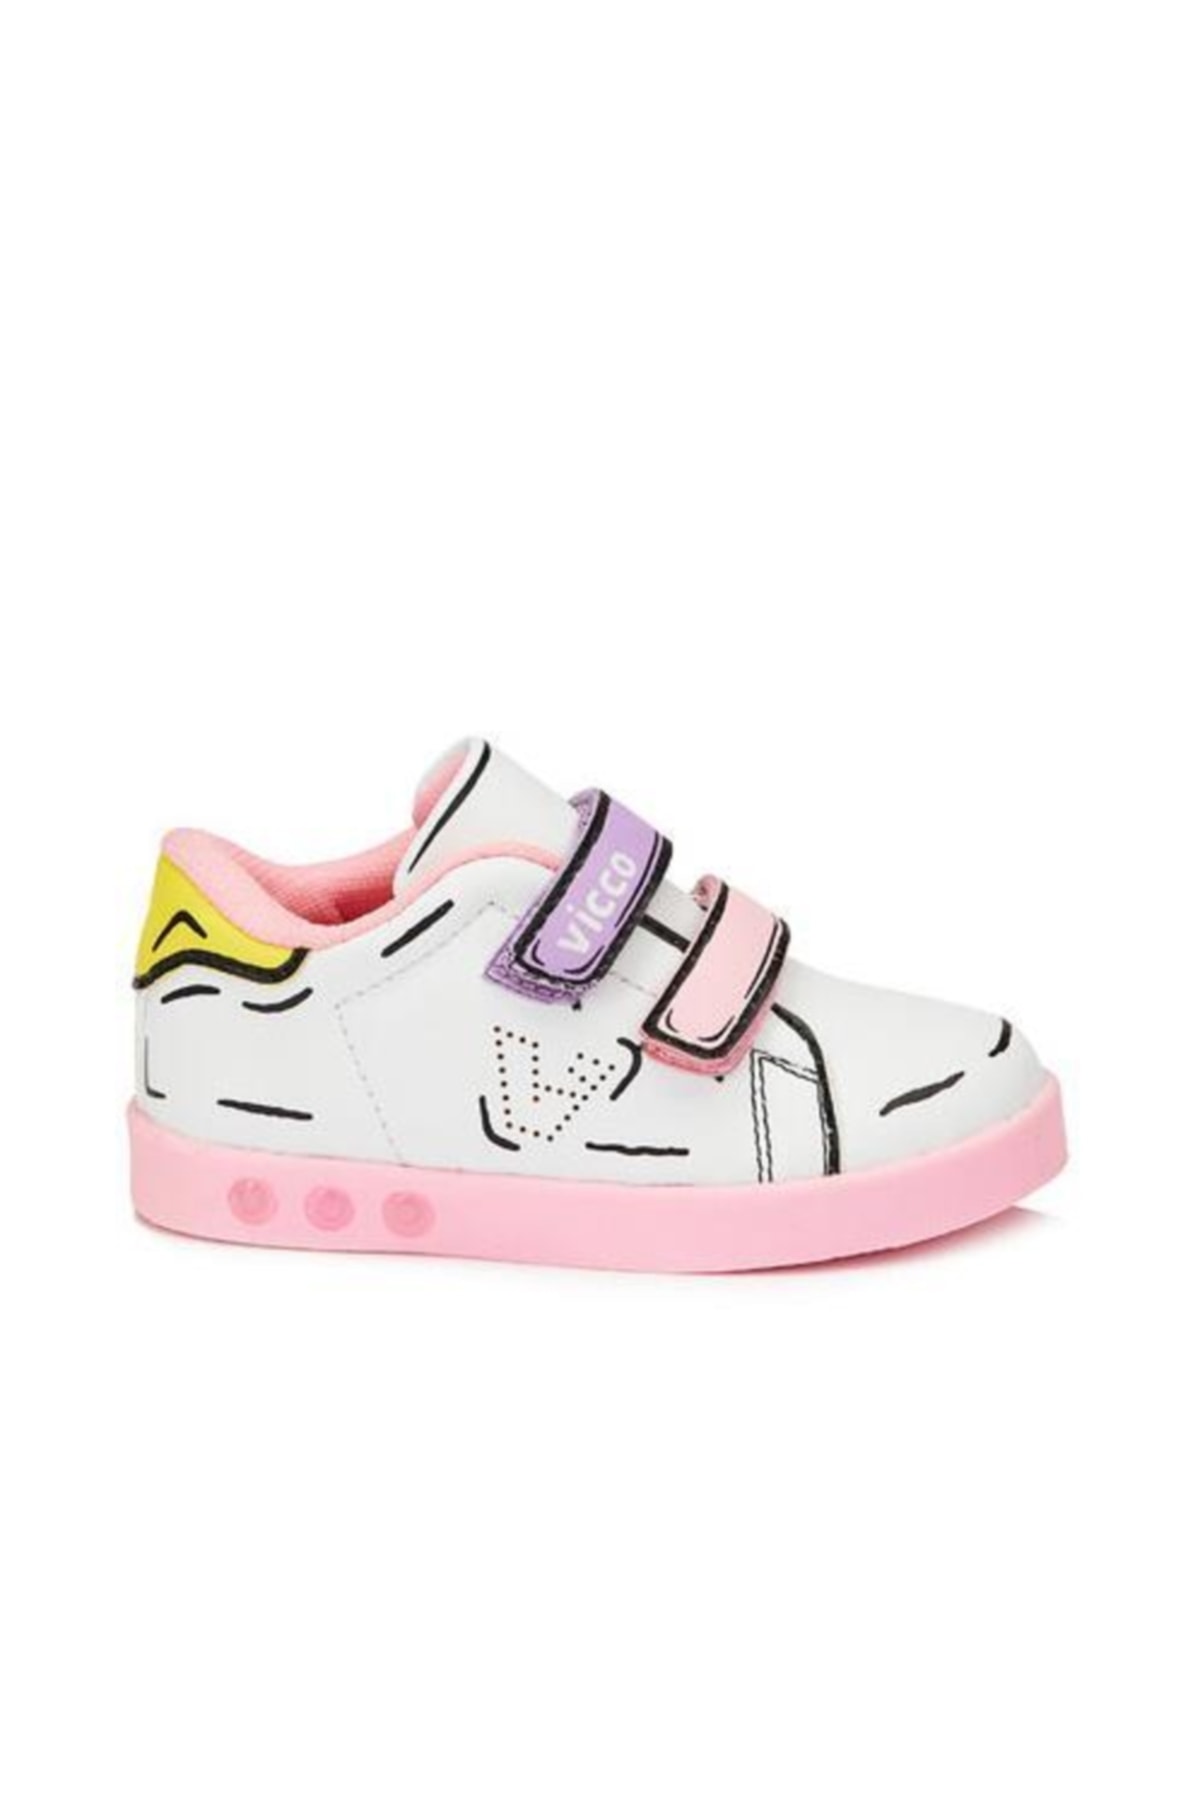 Vicco Pembe - Picasso 22y.153 Günlük Çocuk Sneakers Ayakkabı